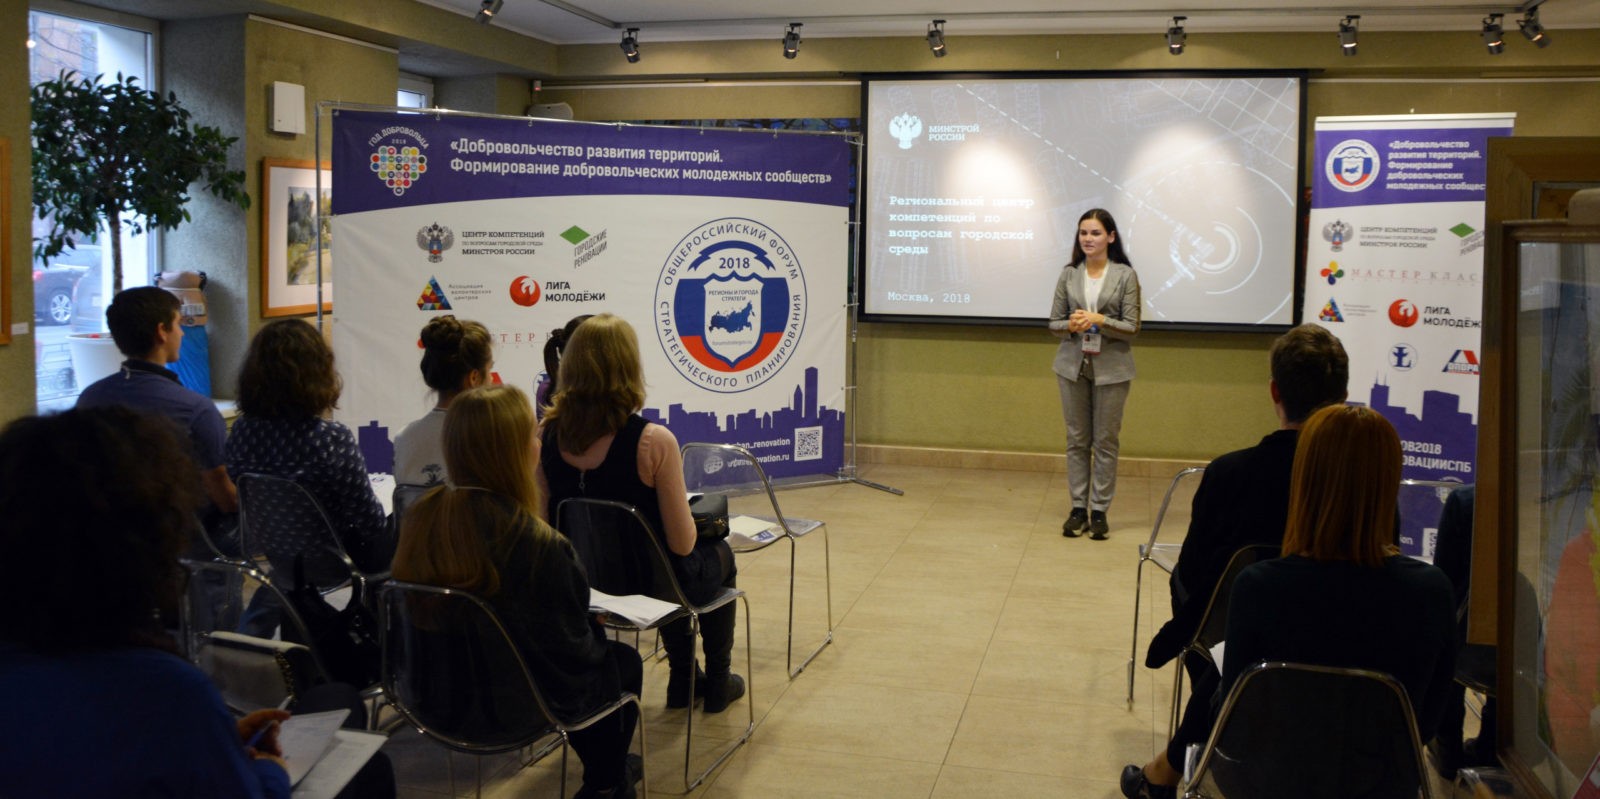 Комьюнити-сессия «Добровольчество развития территорий» в Санкт-Петербурге